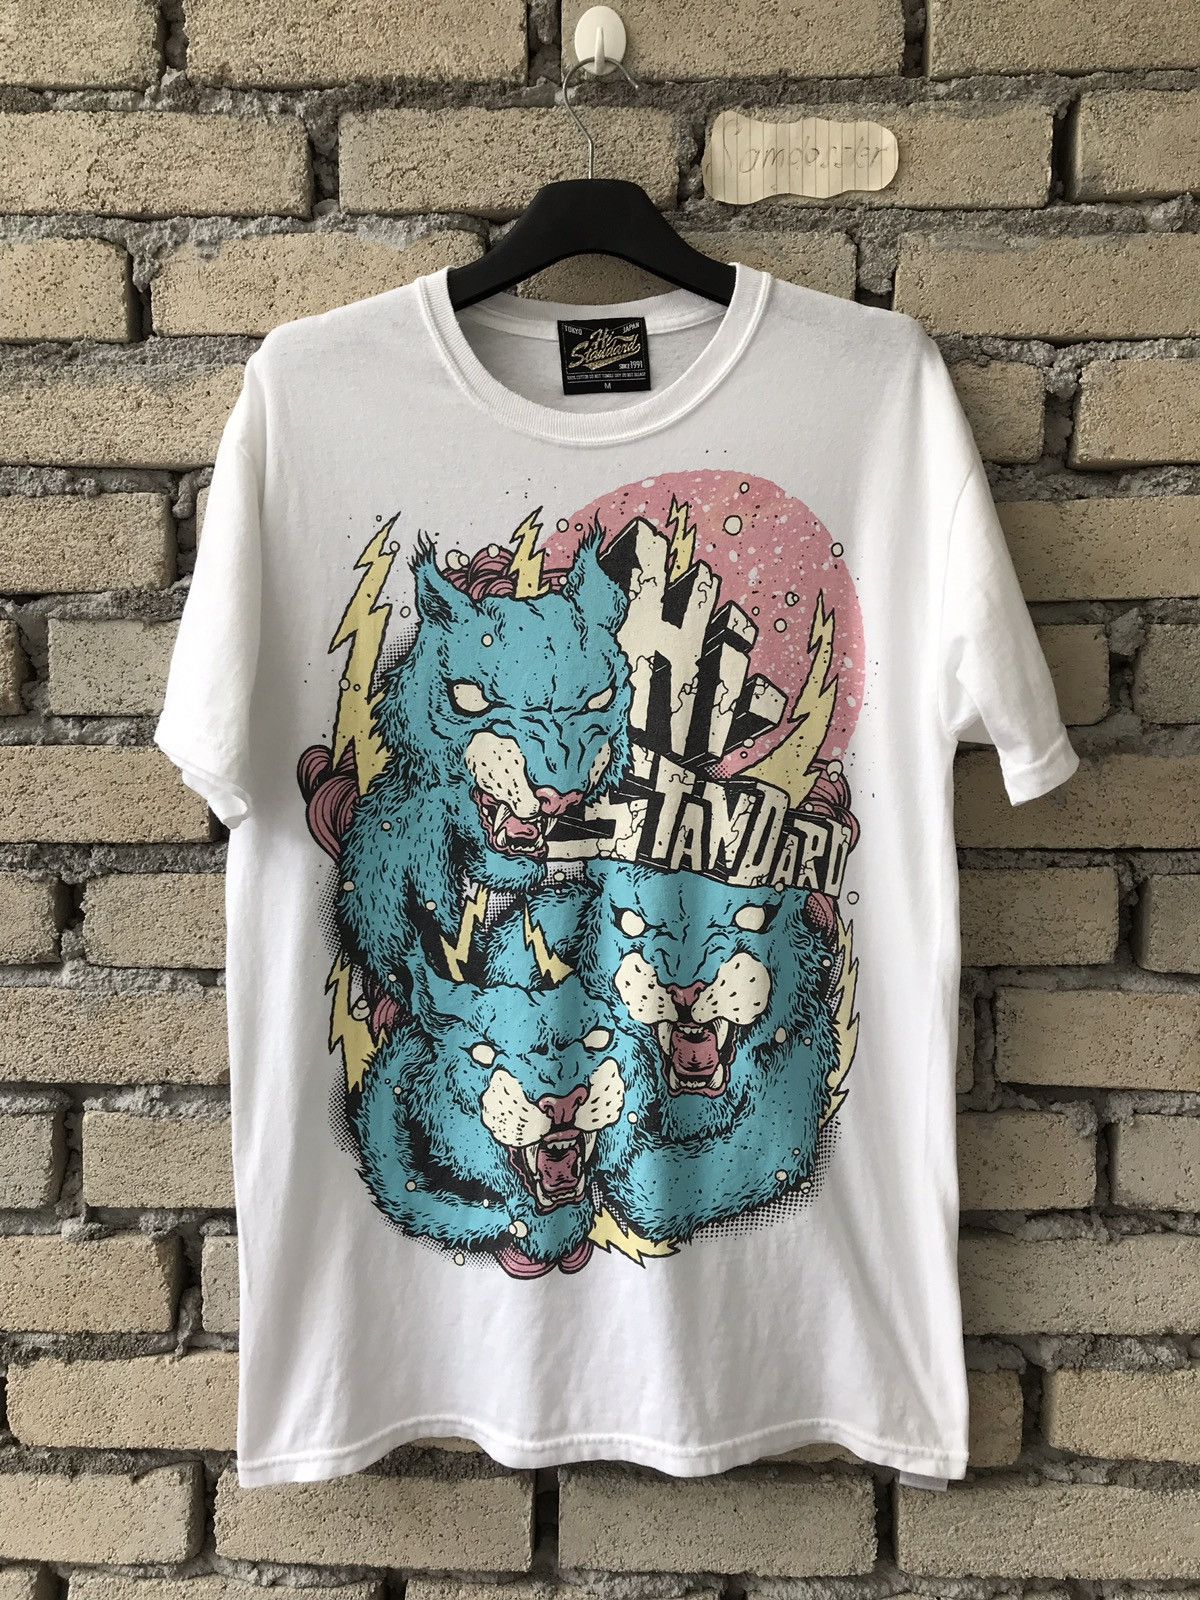 サタニックカーニバルKen Yokoyama　スクープ3 Tシャツ